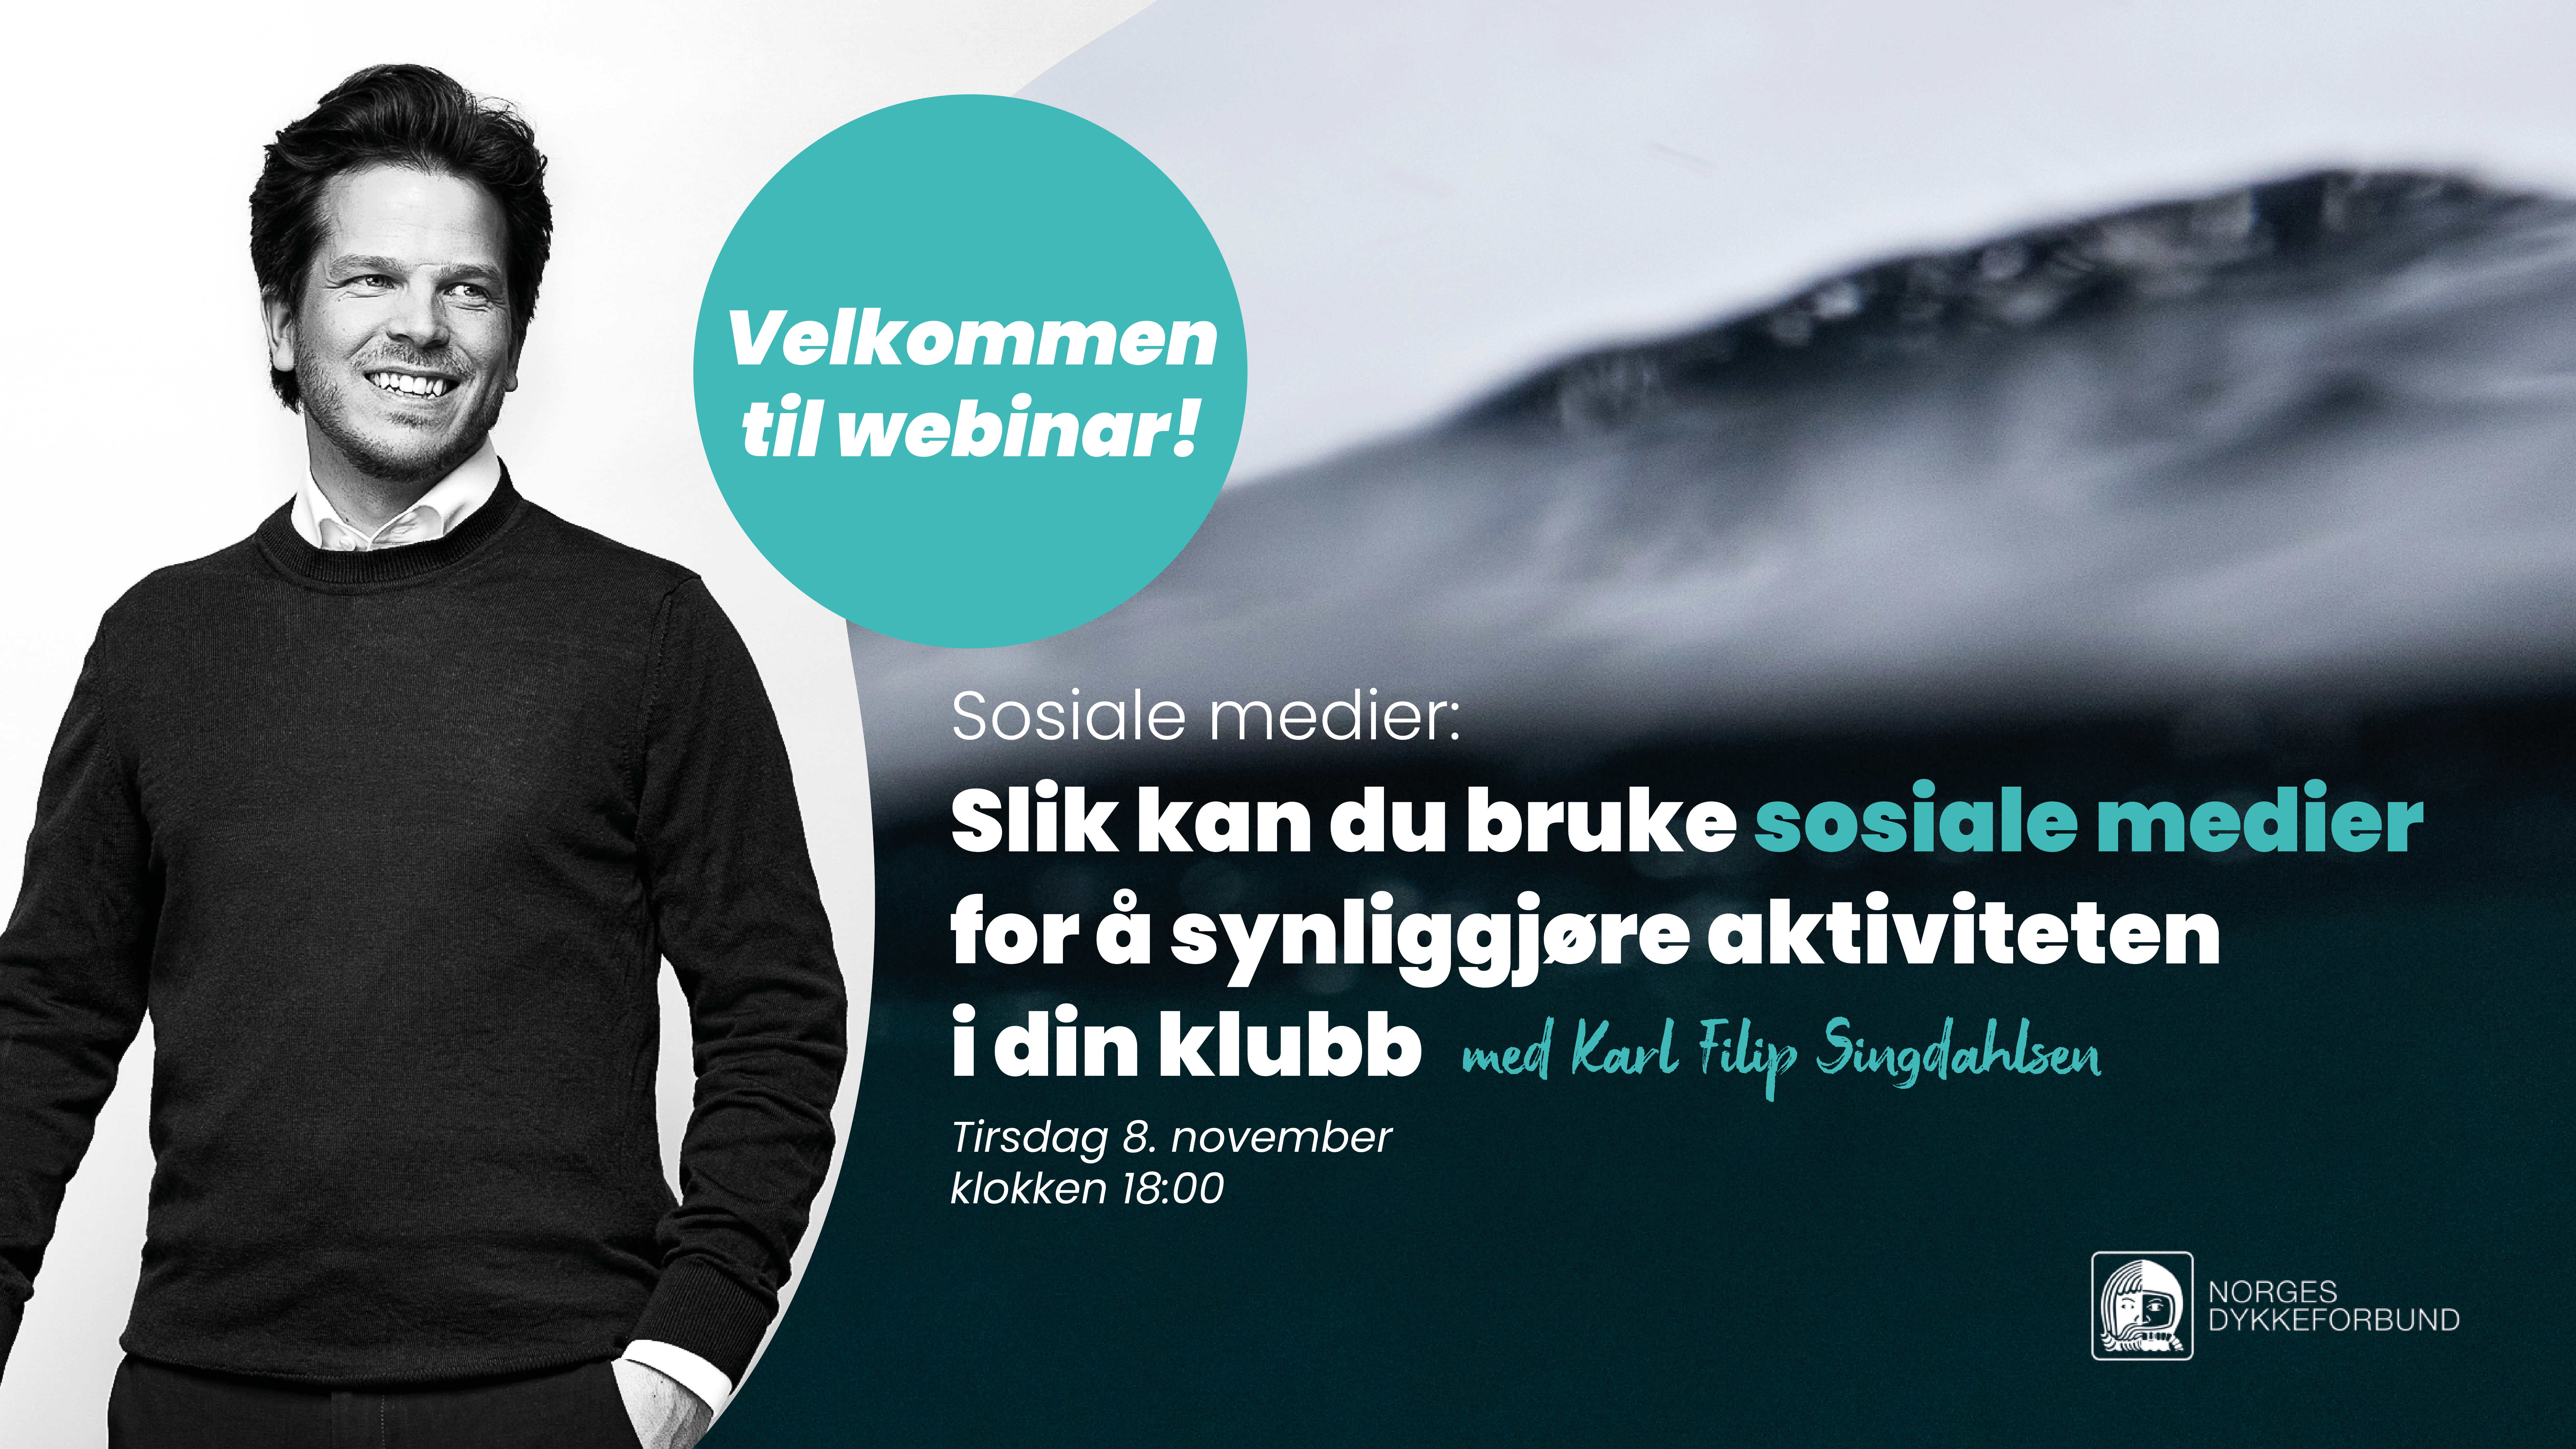 Karl Filip Singdahlsen holder webinar om sosiale medier for klubber og medlemmer av NDF, tirsdag 8. november klokken 18:00.